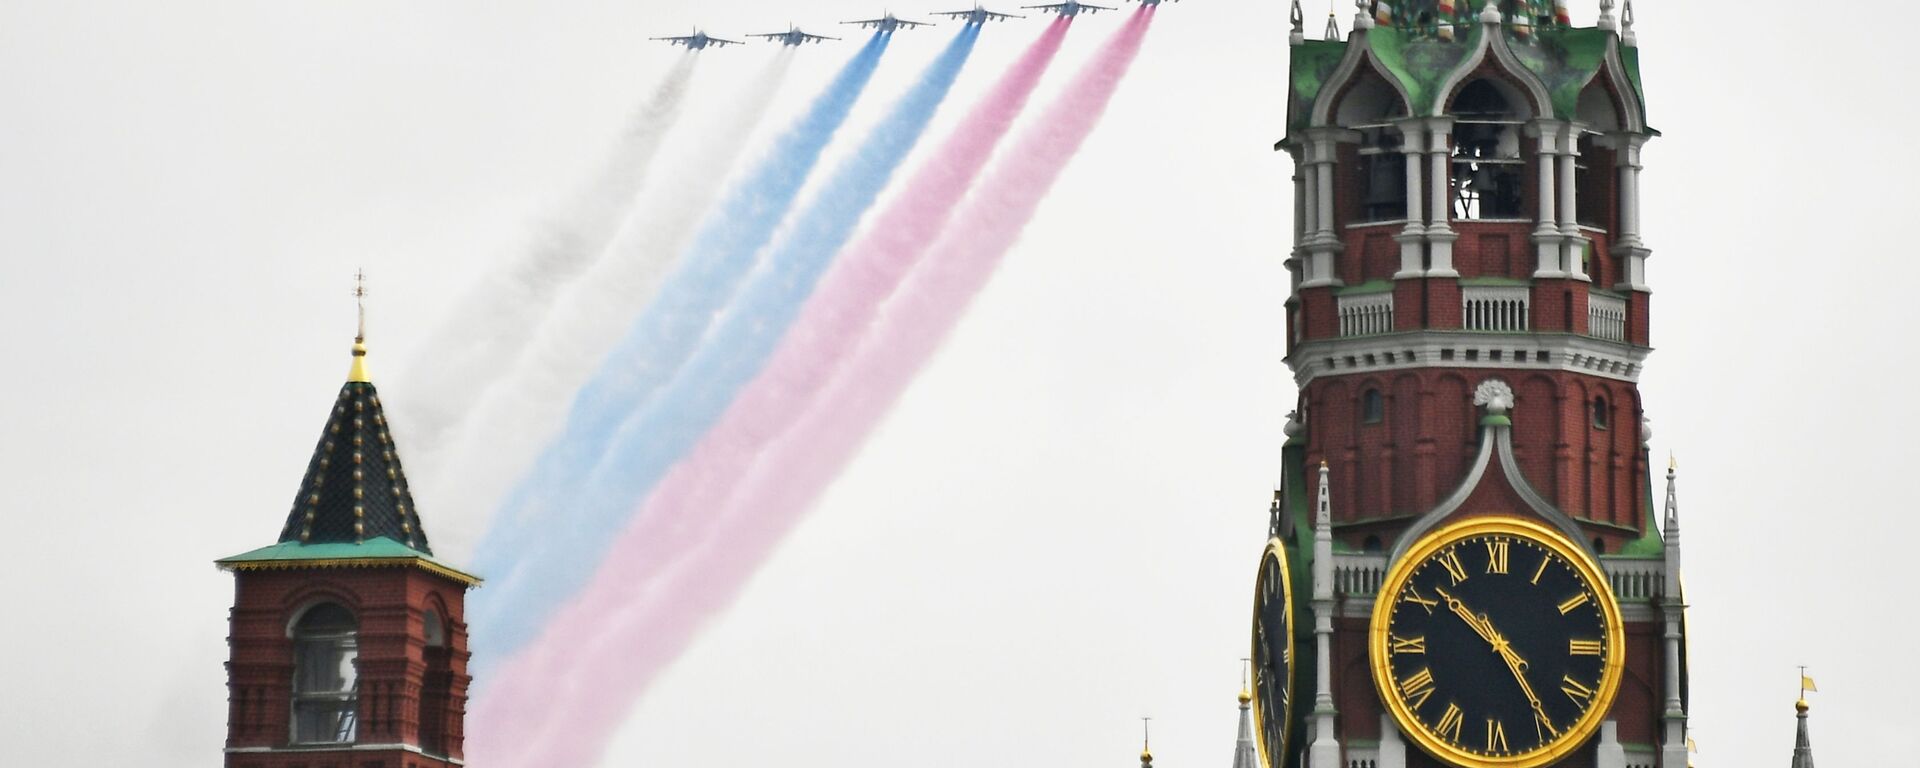 Јуришни авиони Су-25 на проби ваздушног дела Параде победе у Москви - Sputnik Србија, 1920, 14.07.2020